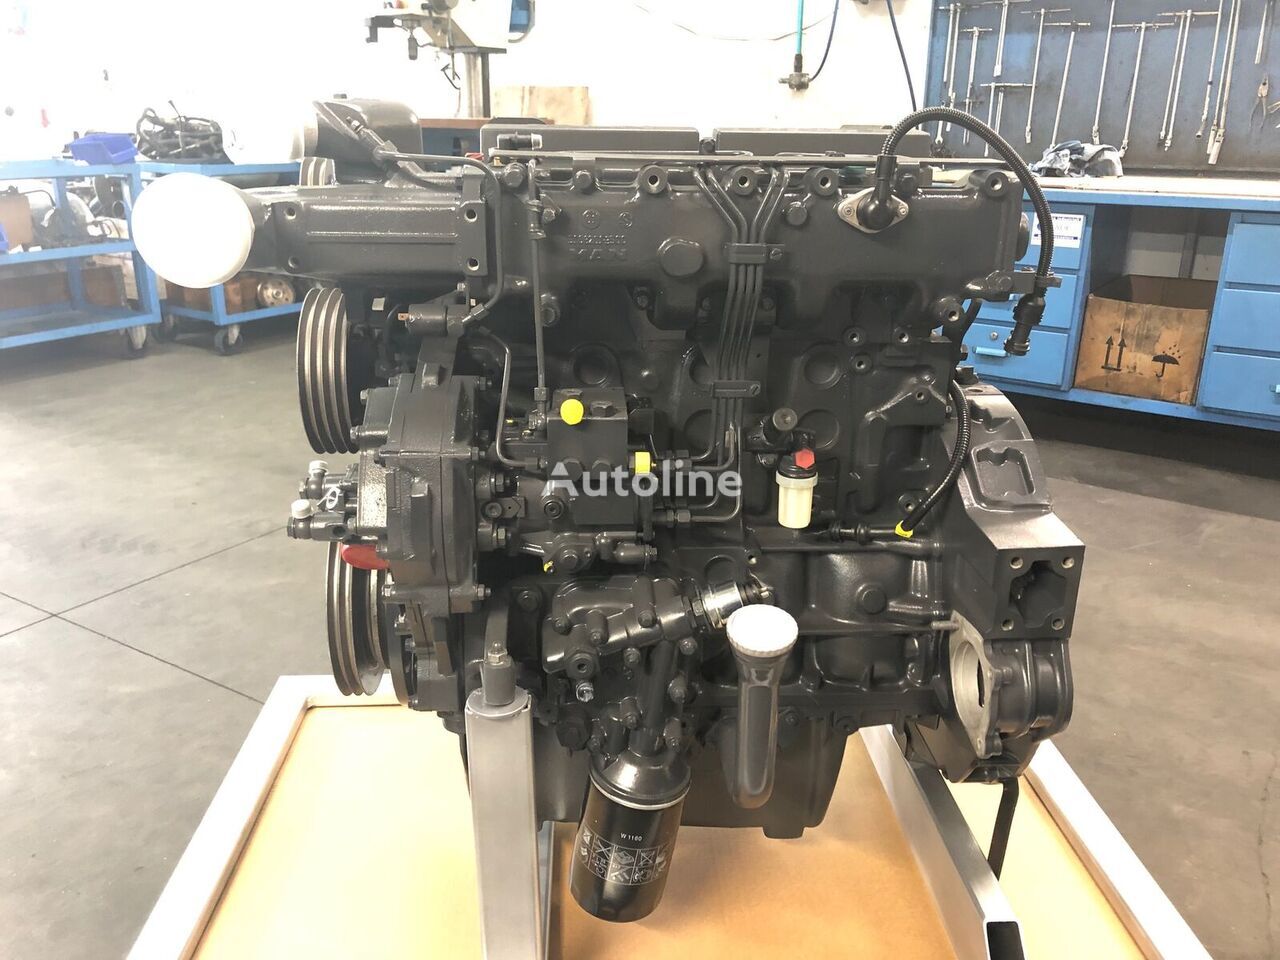 Motor for Lastebil MOTORE MAN D0834LOH02 / D0834 LOH02 - 170CV - EURO 3 - completo   MAN: bilde 10